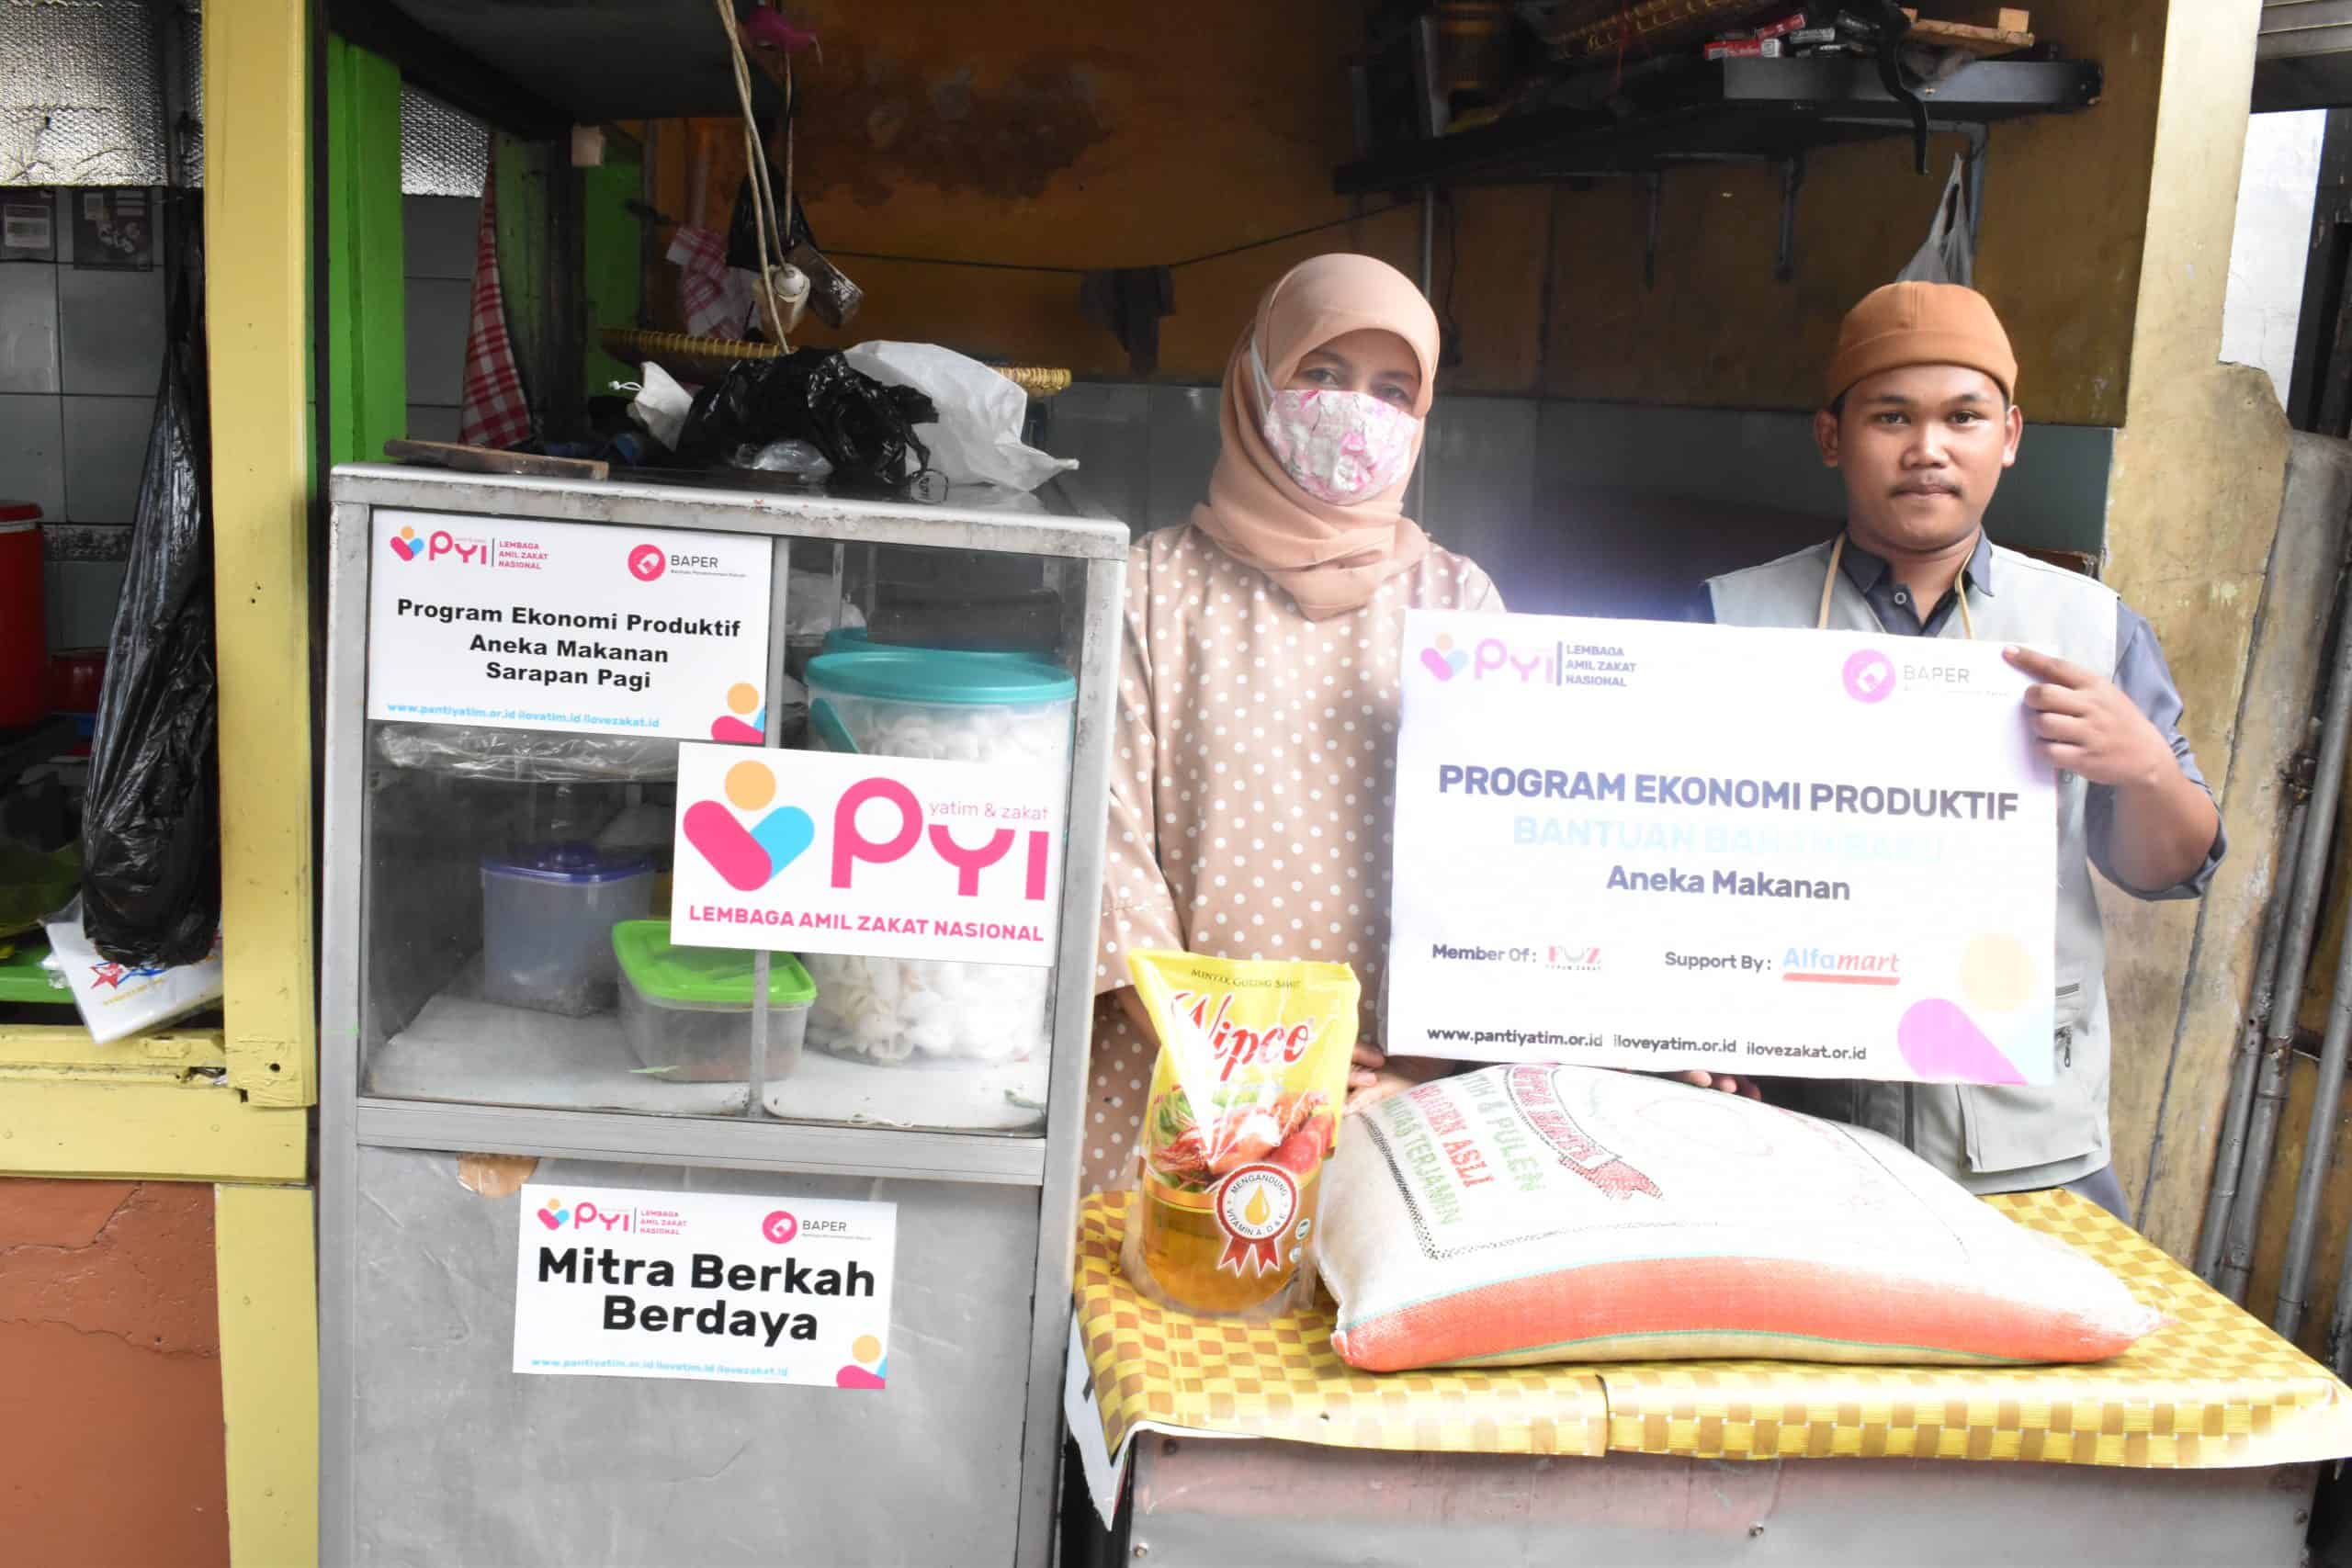 Panti Yatim Indonesia Salurkan Bantuan Ekonomi Produktif